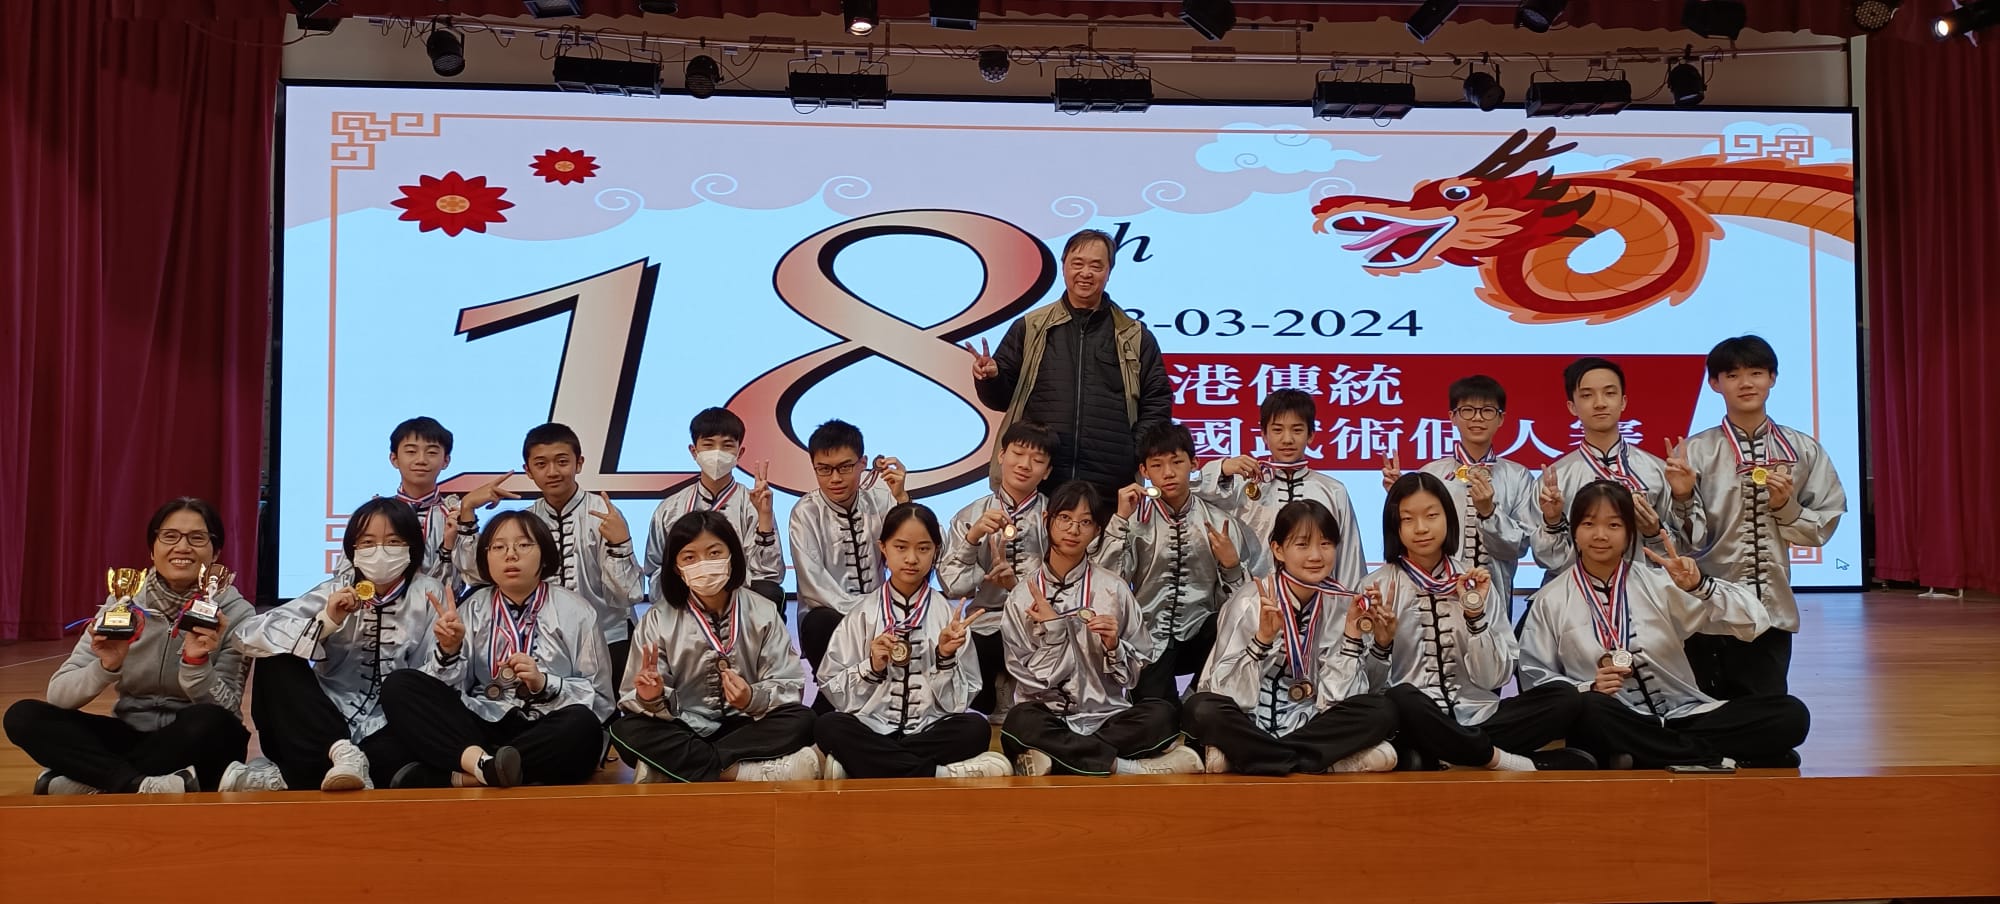 第18屆全港傳統中國武術個人賽 – 比賽結果 (03-03-2024)